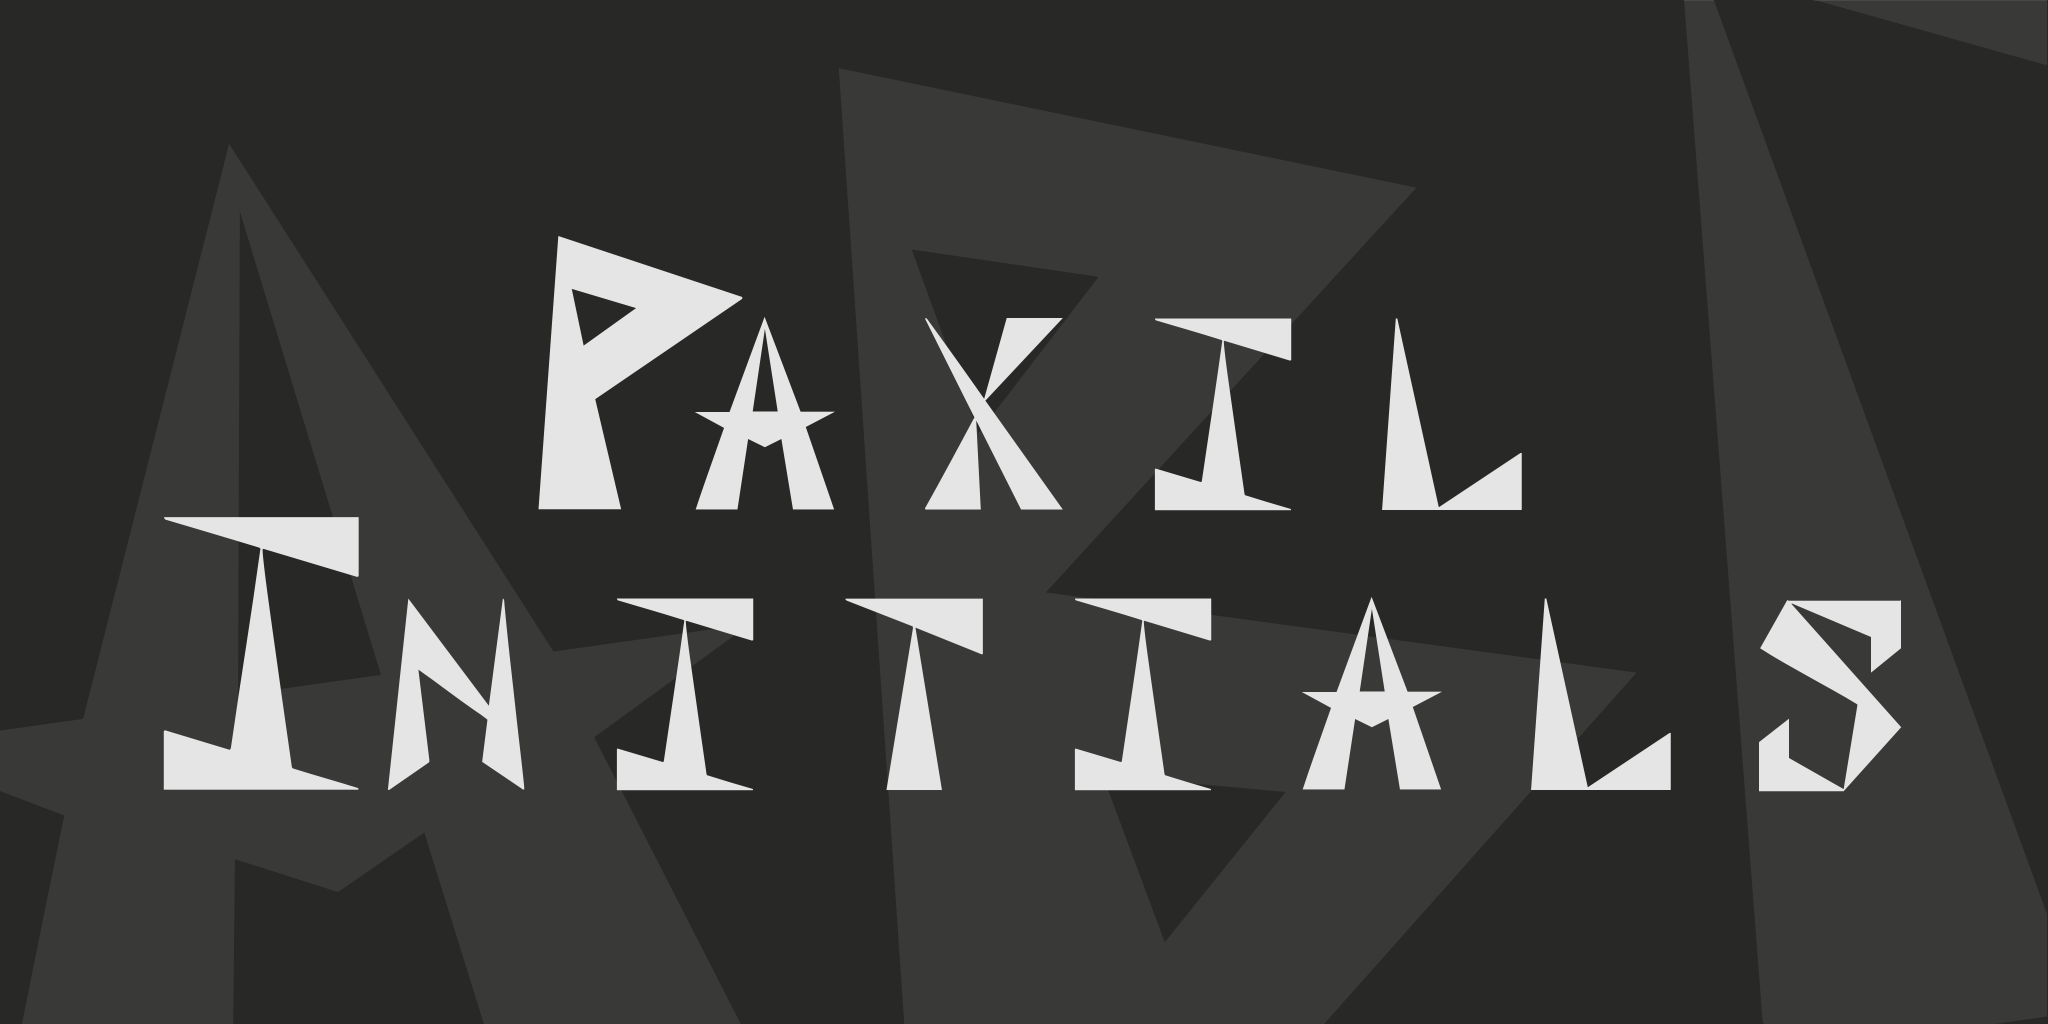 Paxil Initials